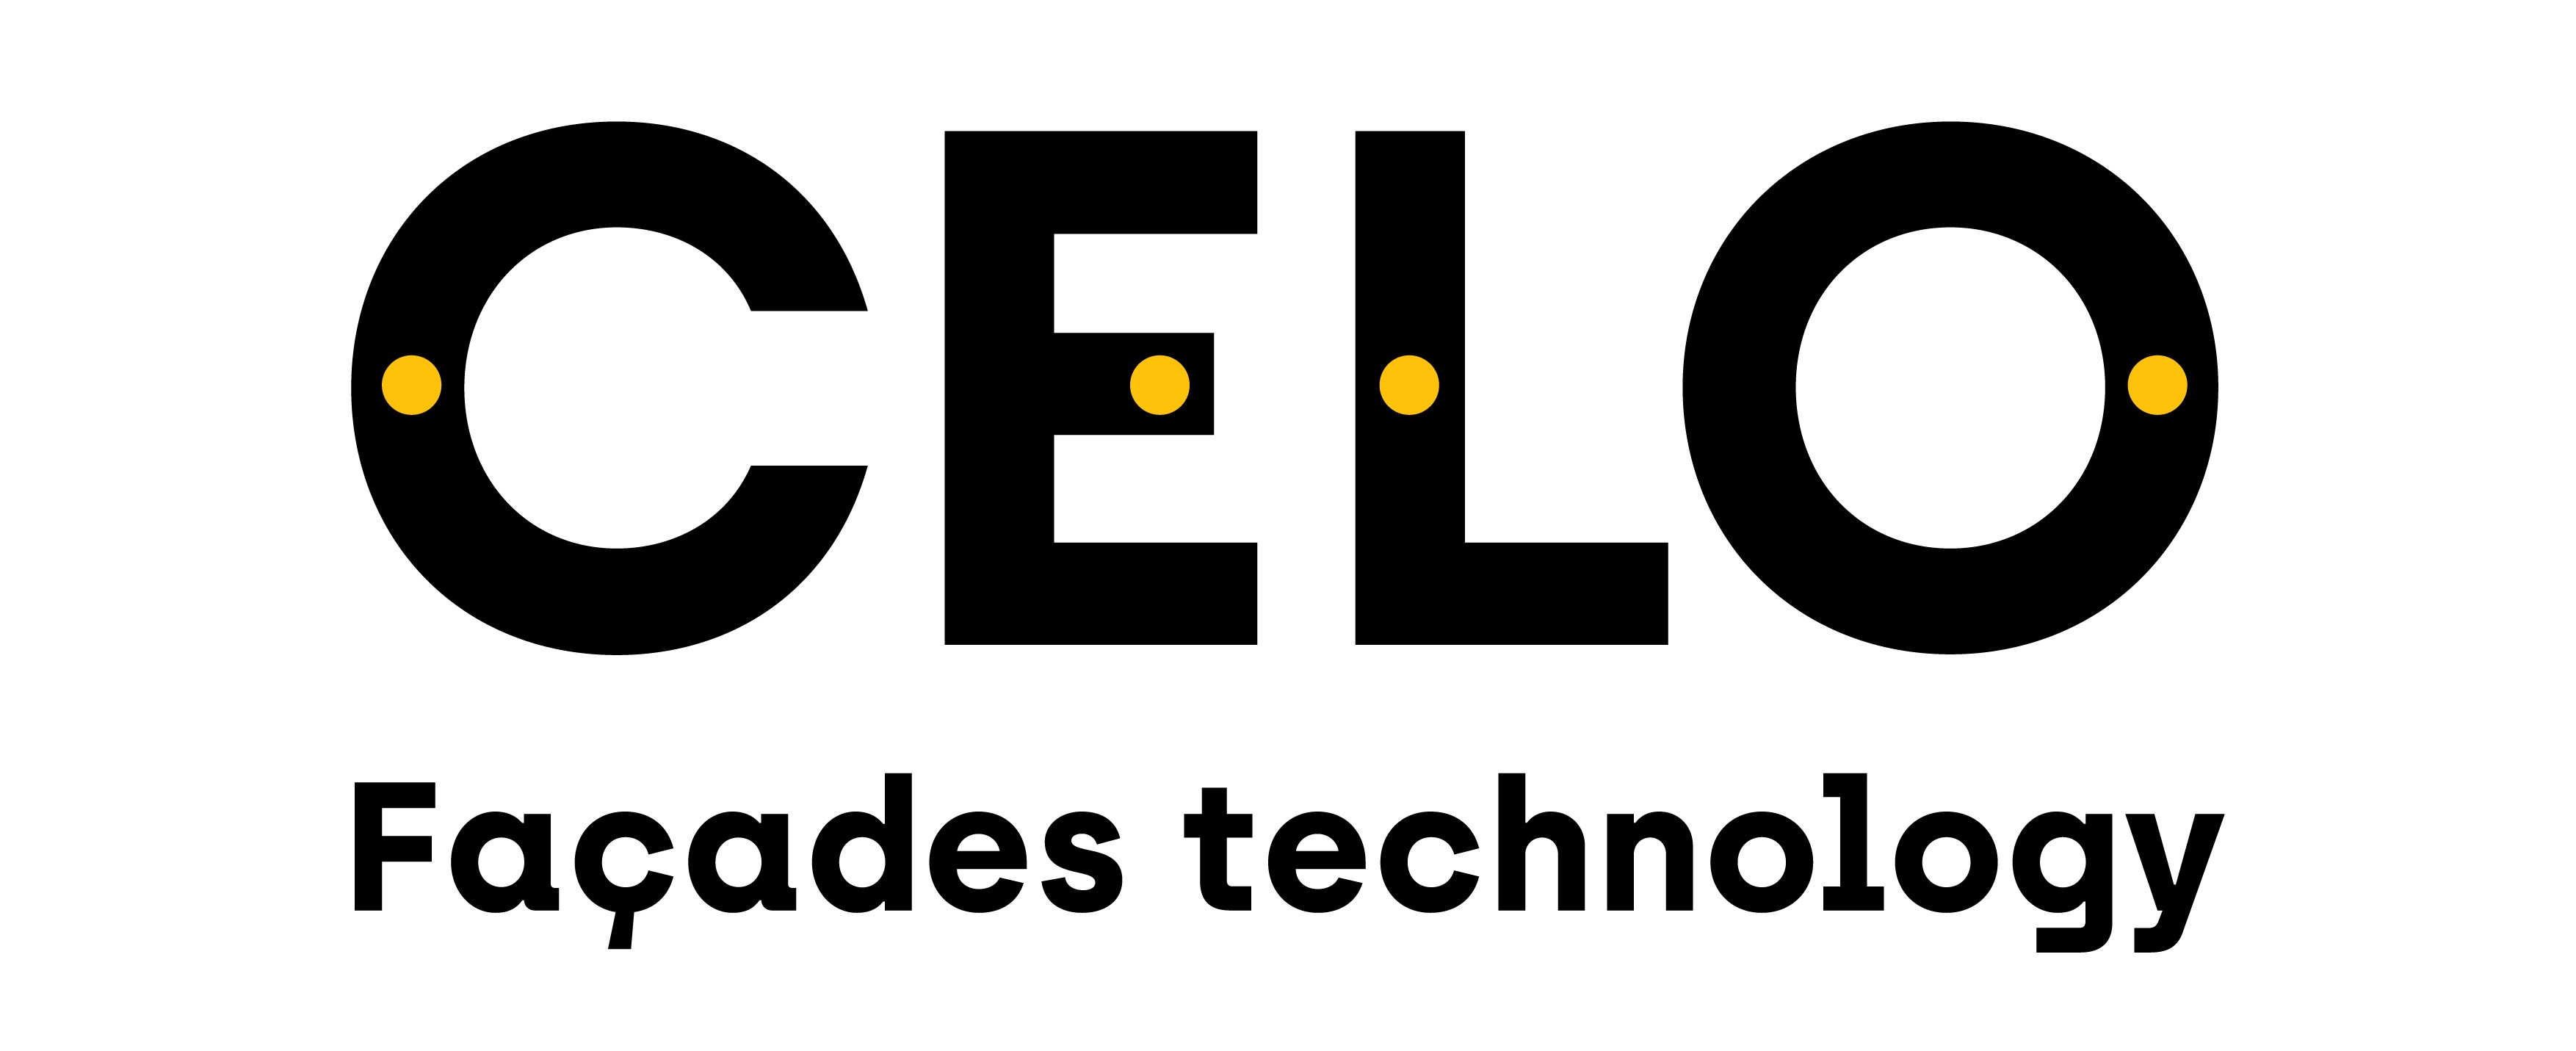 Logo von CELO Fassadentechnologie in Schwarz mit gelben Akzentpunkten